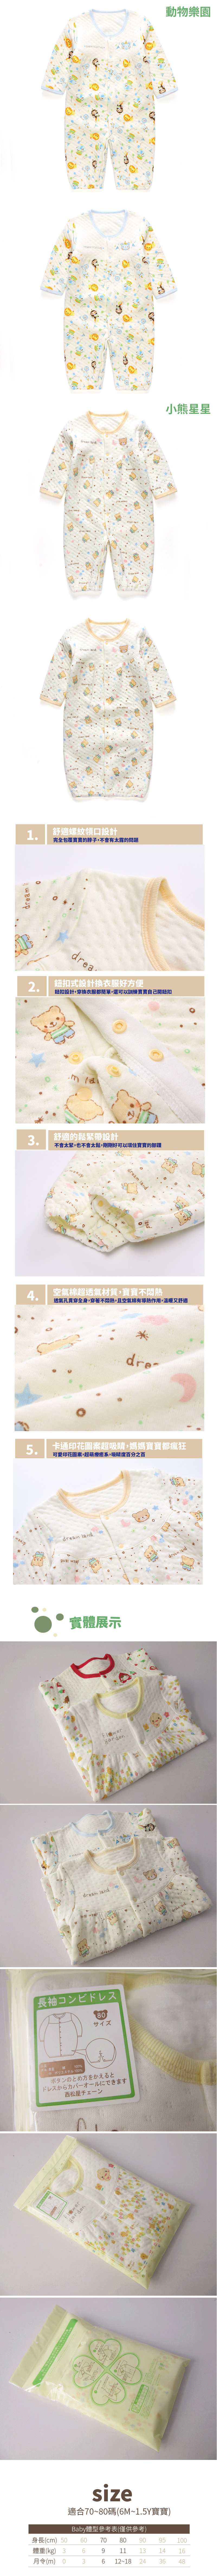 加厚三層棉長袖寶寶服【GD0055】日本 印花寶寶 連身衣 保暖兔裝 新生兒服 包屁衣 (70、80)